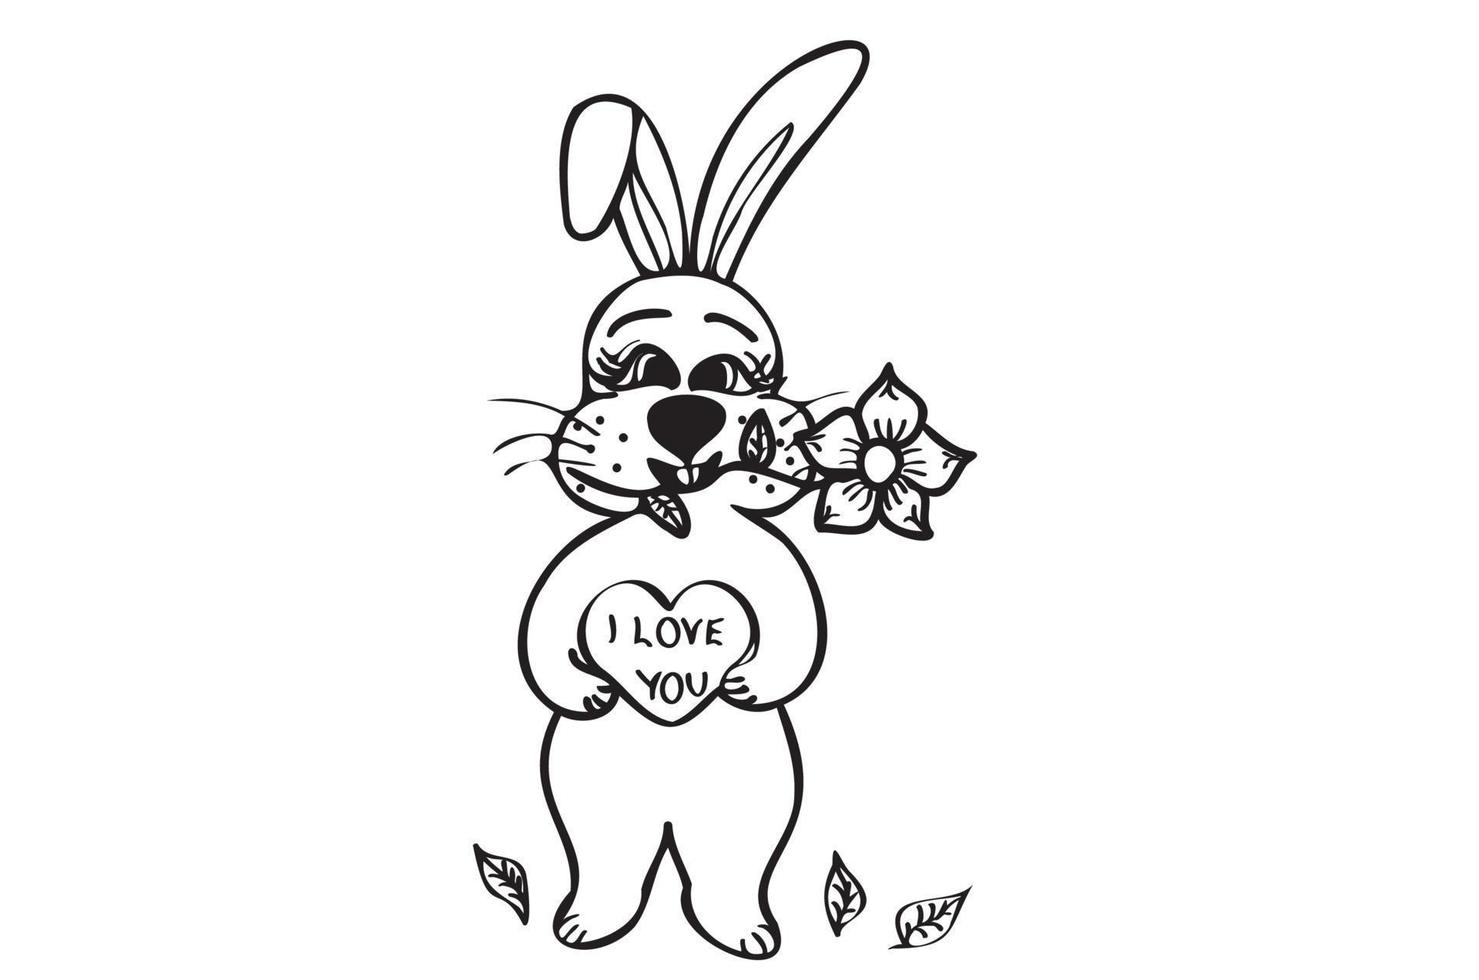 arte de línea de conejito vintage, gran diseño para cualquier propósito.  diseño moderno de moda. conejo en el corazón de la mano, flor en la boca.  ilustración romántica. 7486574 Vector en Vecteezy